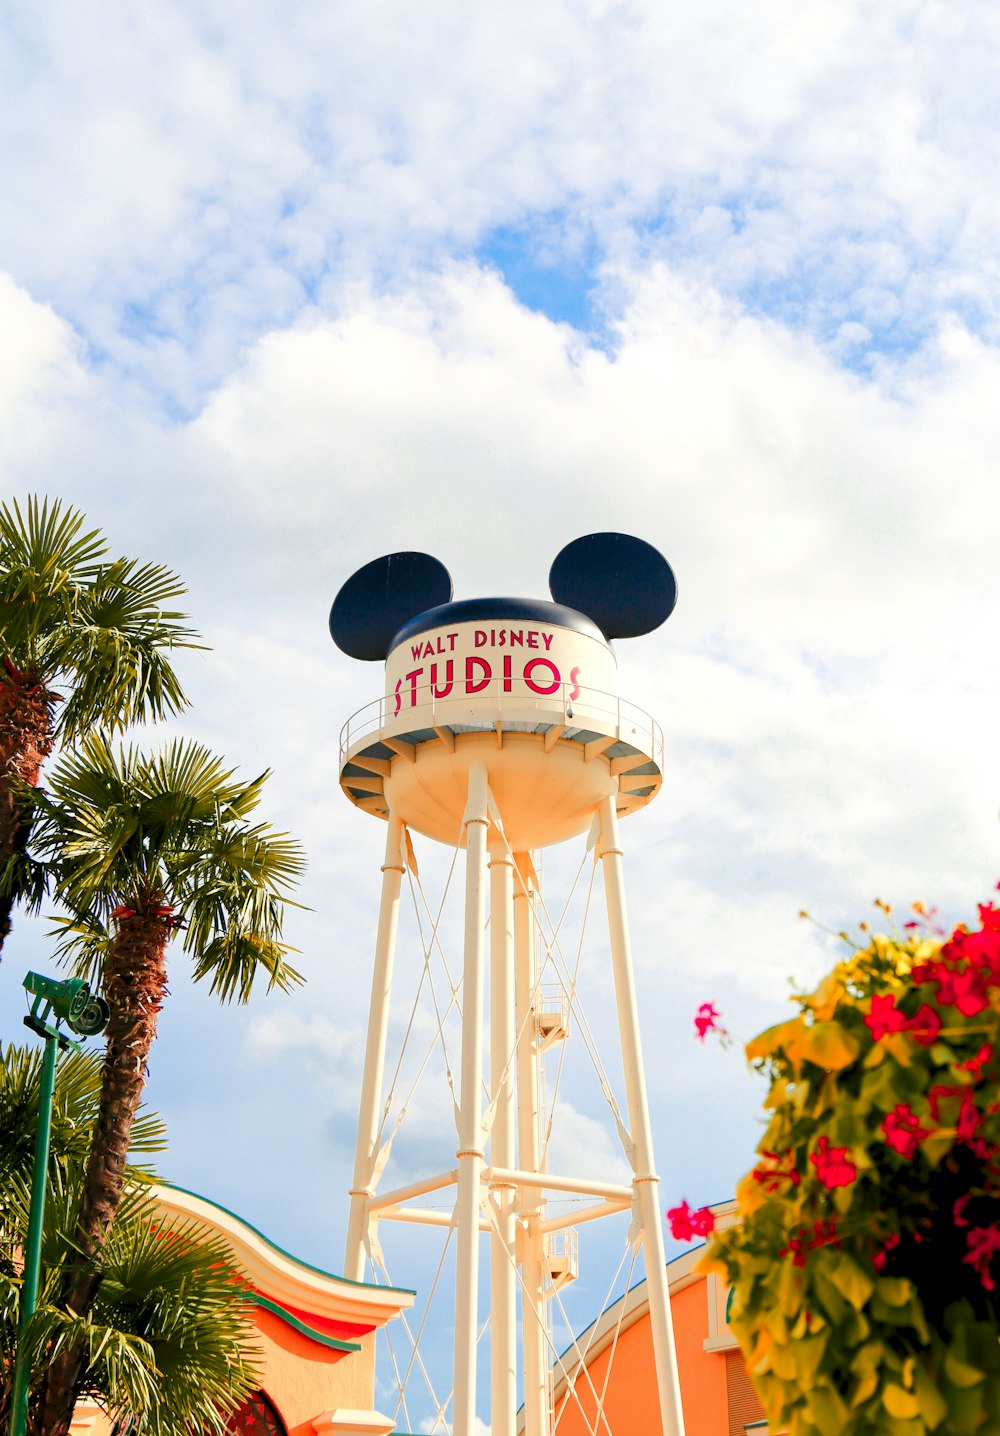 Ein weißer Turm mit einem Mickey-Mouse-Schild darauf